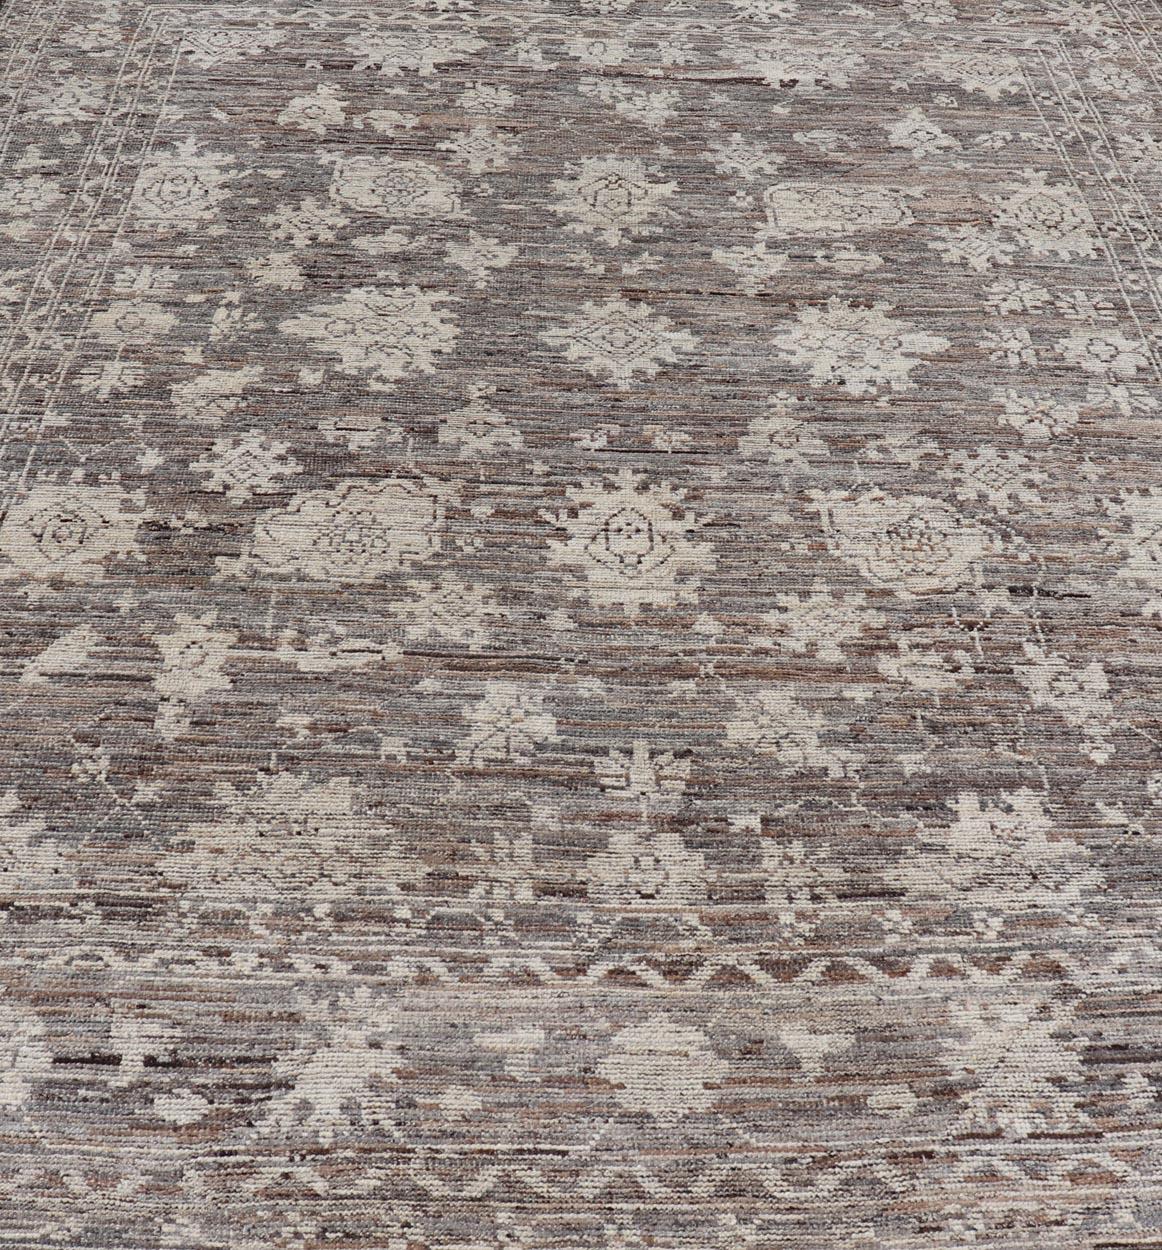 Dieser moderne Teppich im Oushak-Stammesdesign wurde aus Wolle handgeknüpft. Der Teppich zeichnet sich durch ein modernes, subgeometrisches Blumenmuster aus, das von einer komplementären, mehrstufigen Bordüre umgeben ist. Der Teppich ist in Braun-,